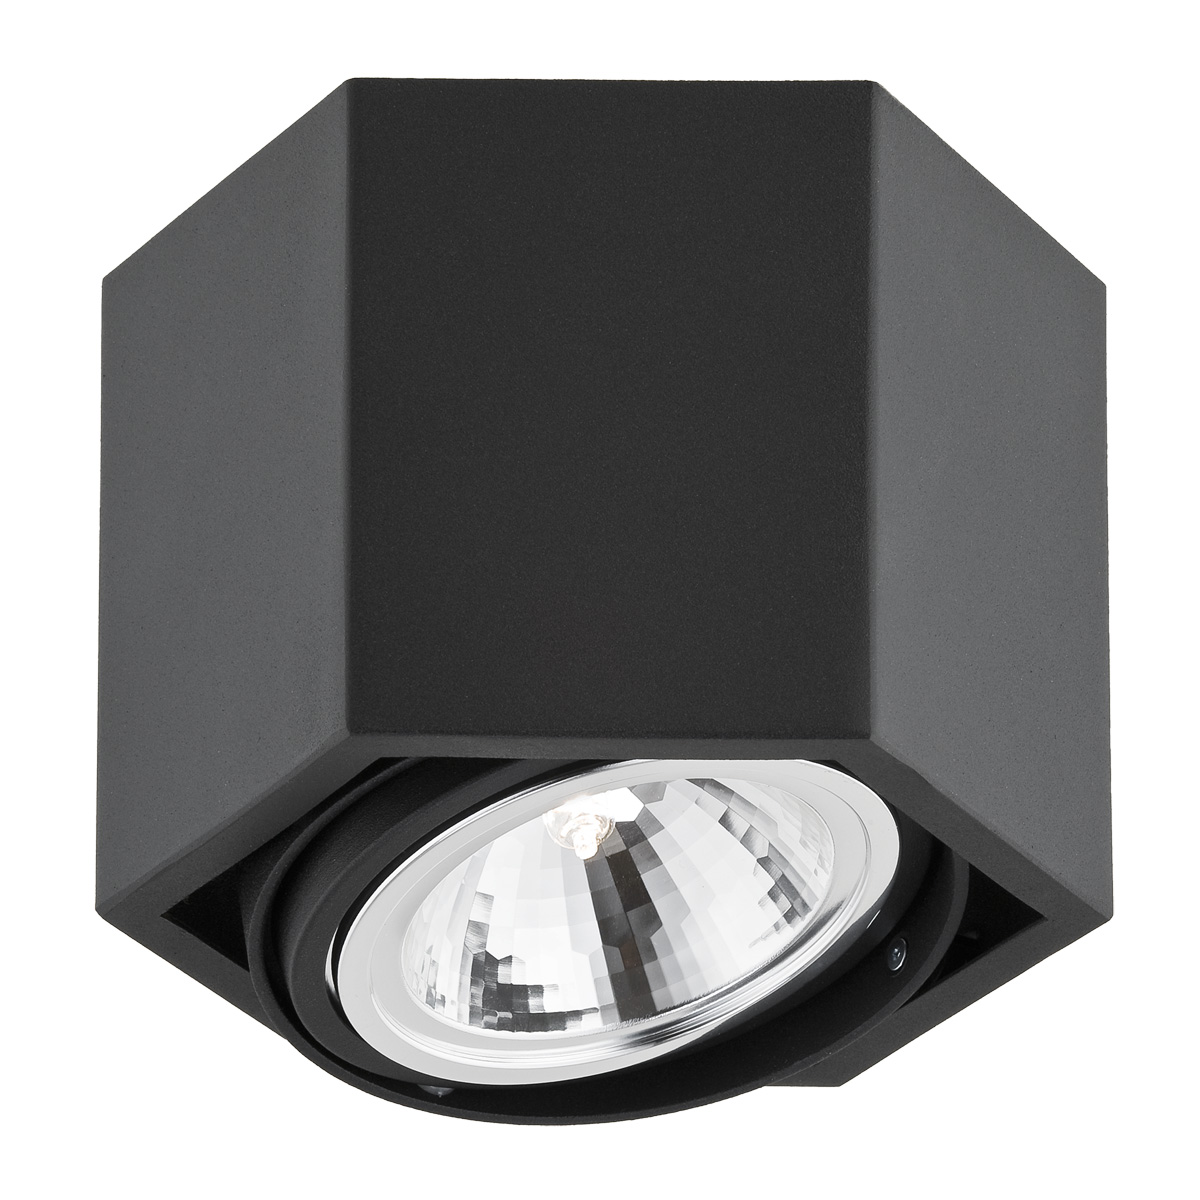 Lampa sufitowa Argon Espresso 3303 1x48W G9 czarna